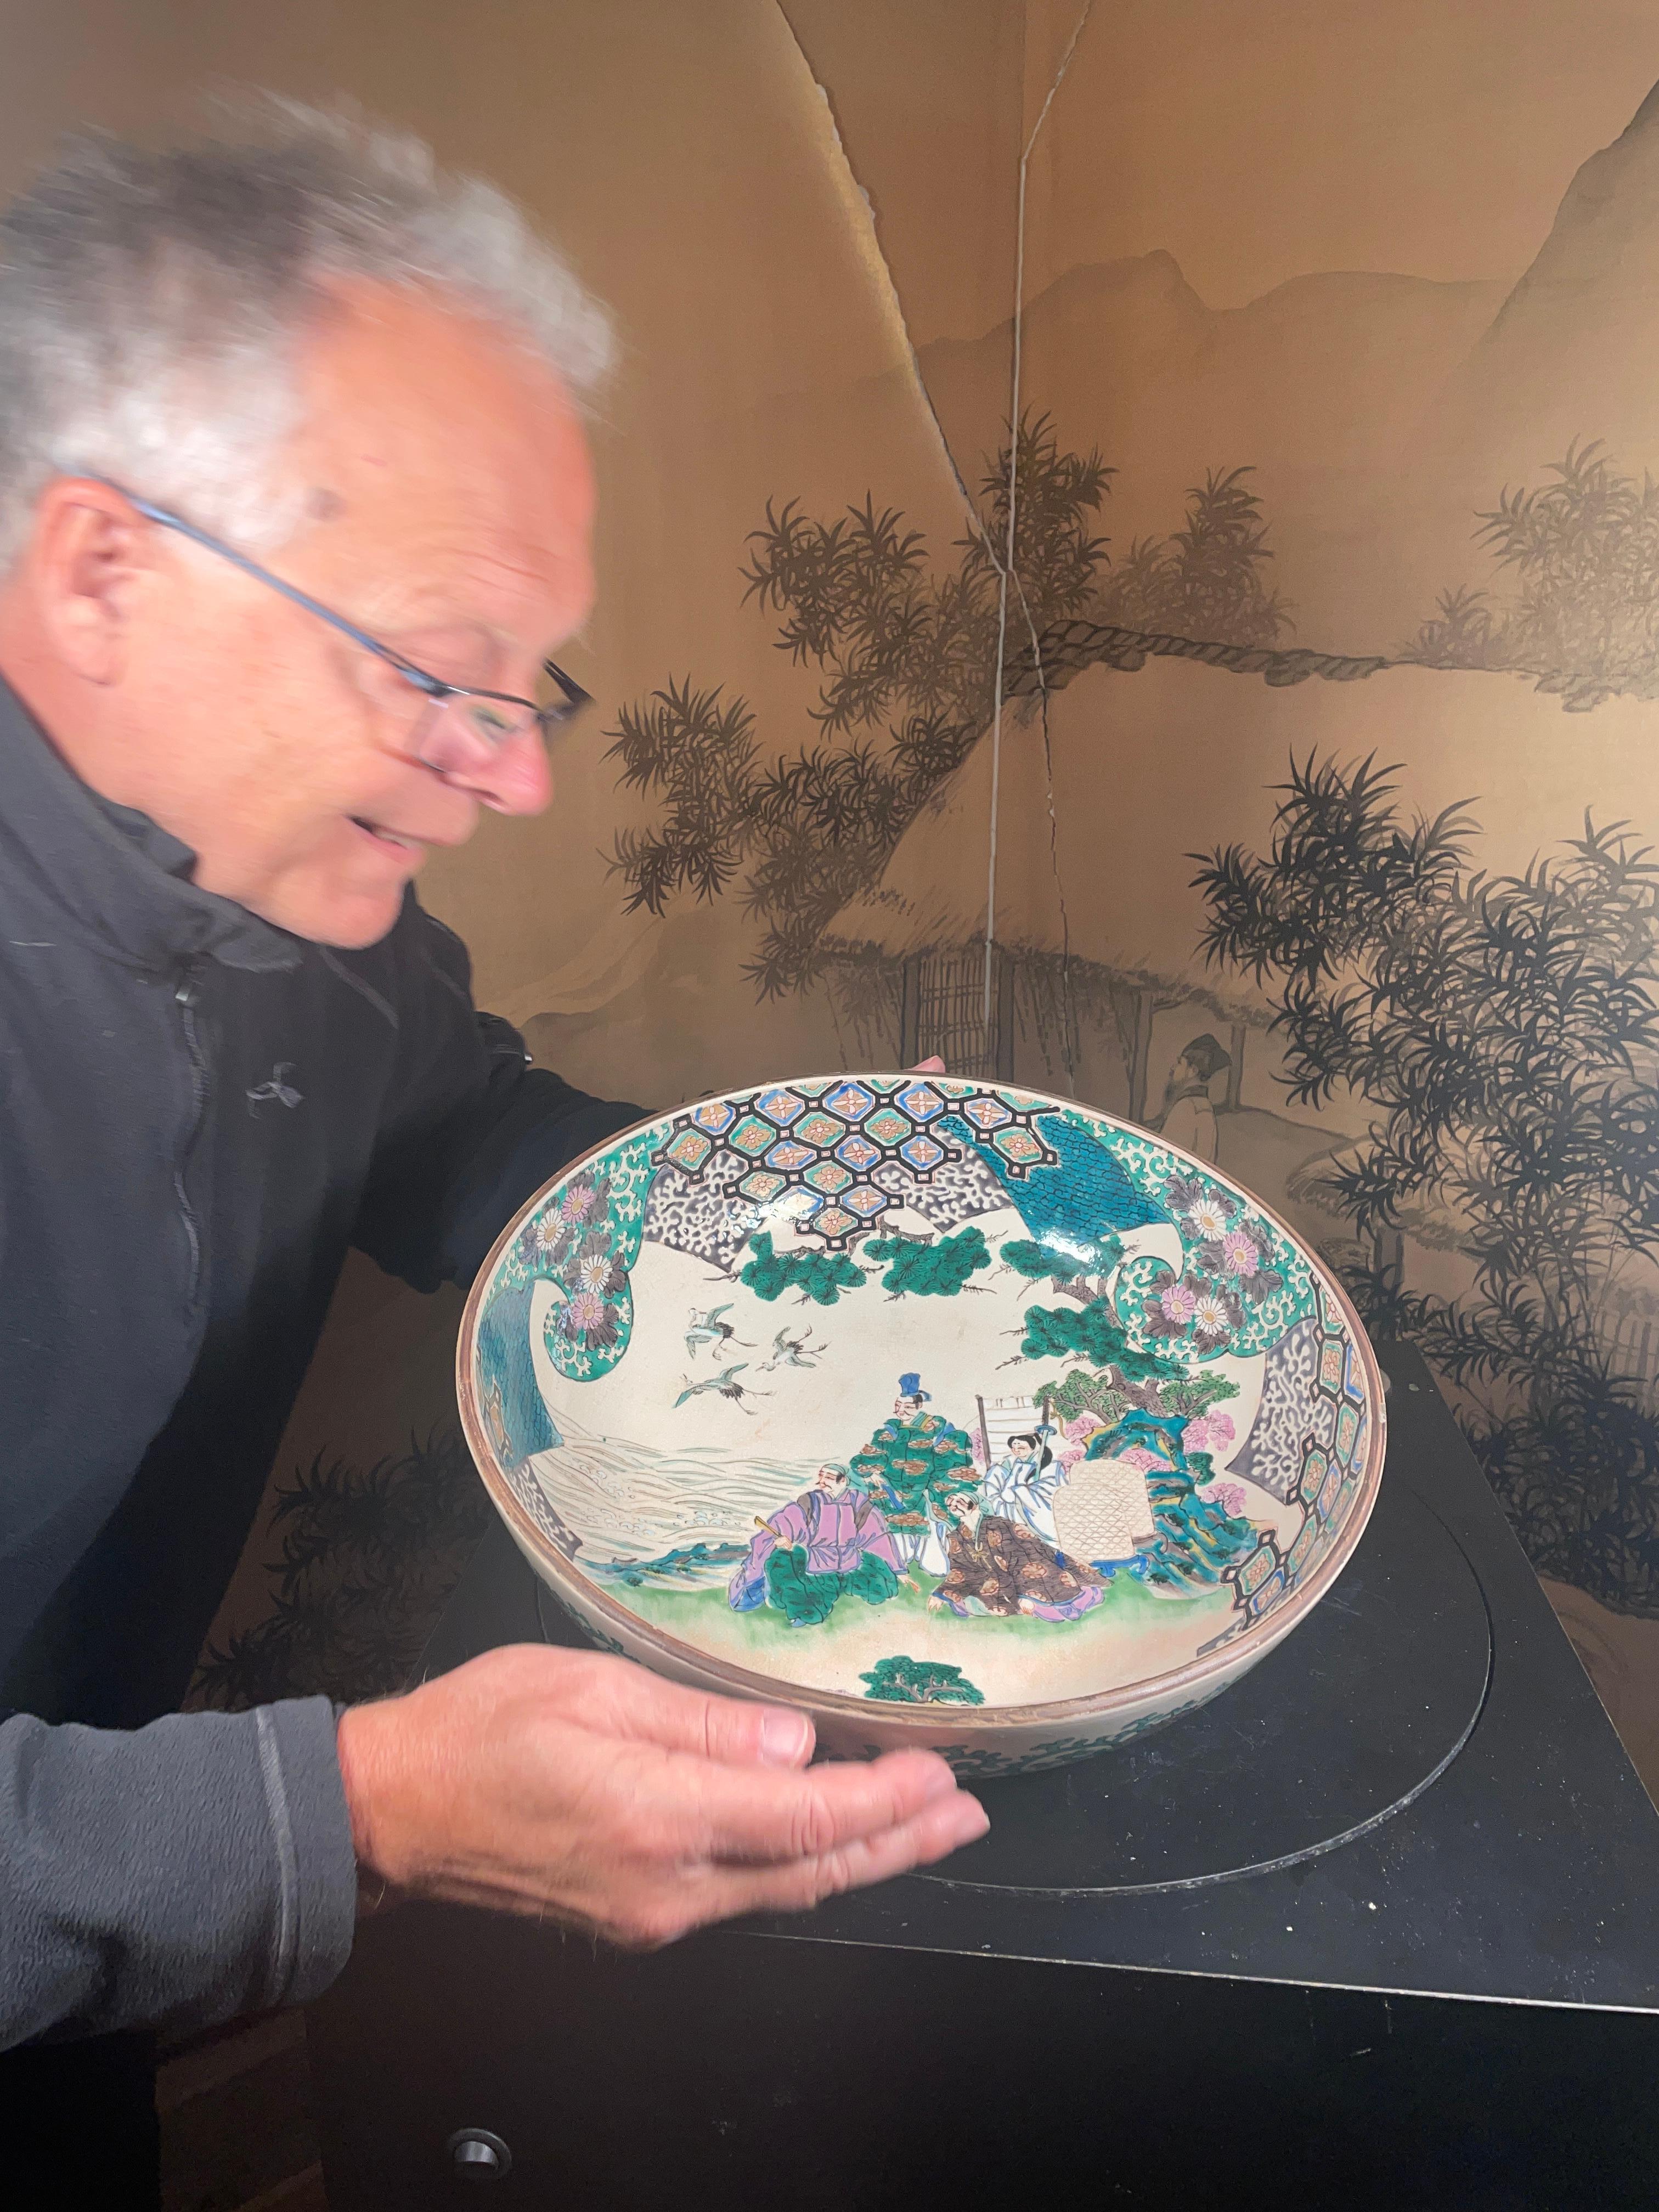 Von unserer letzten Japanischen Ankaufsreise - eine große und schöne handbemalte Schale mit 13 Zoll Durchmesser aus Japan.

Japan schwer zu finden frühe Hand gemalt Keramik üppigen 